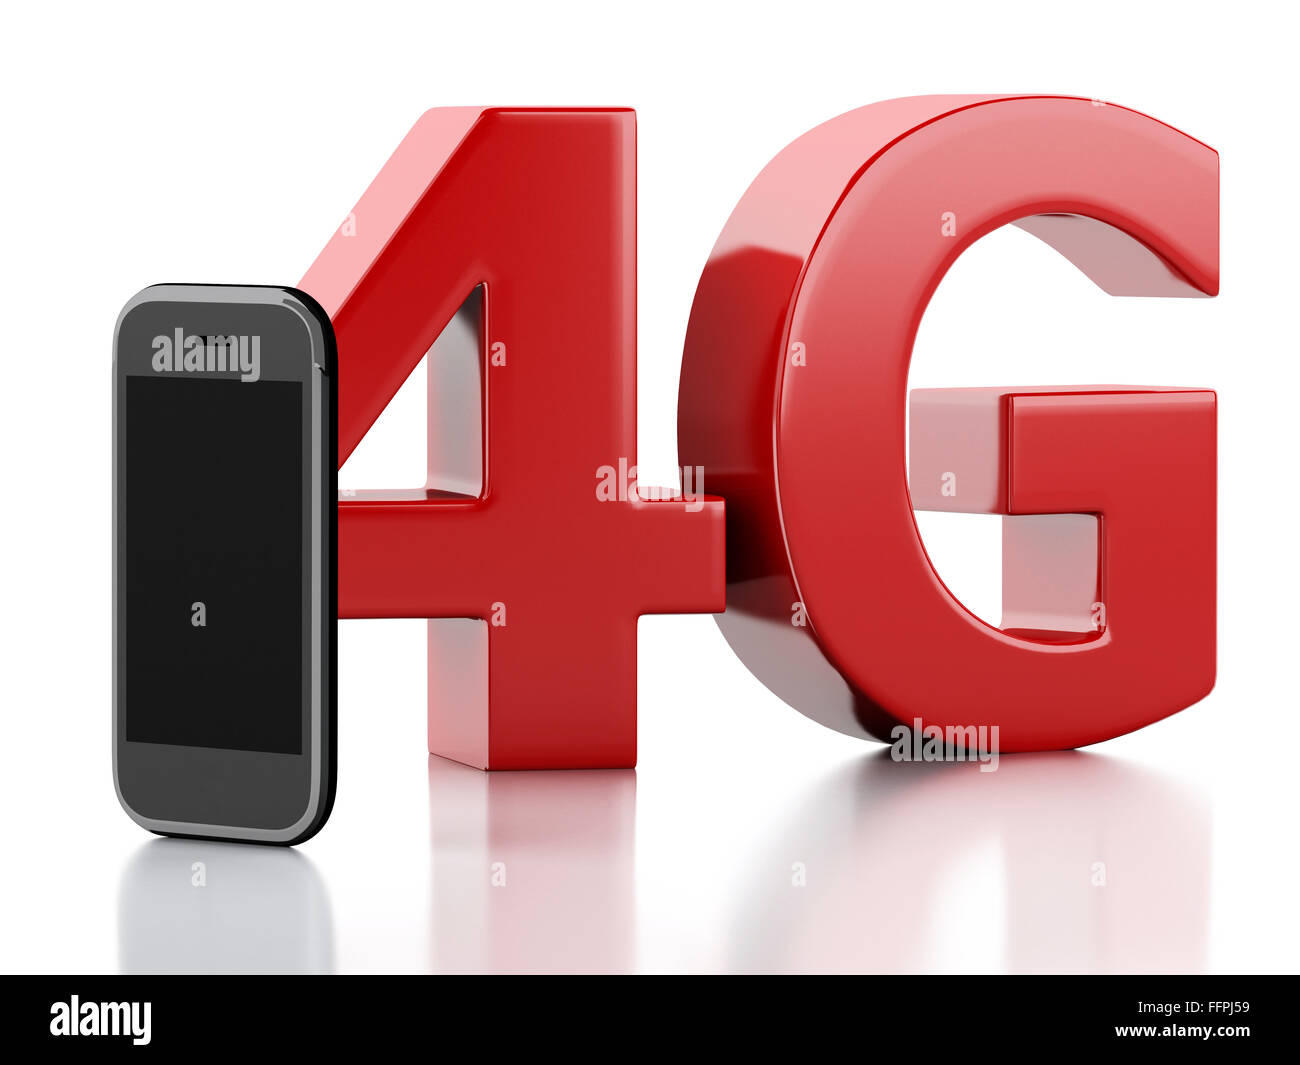 Moteur de rendu 3d image. Smart phone avec 4g lte signe. La communication concept. Isolé sur fond blanc Banque D'Images